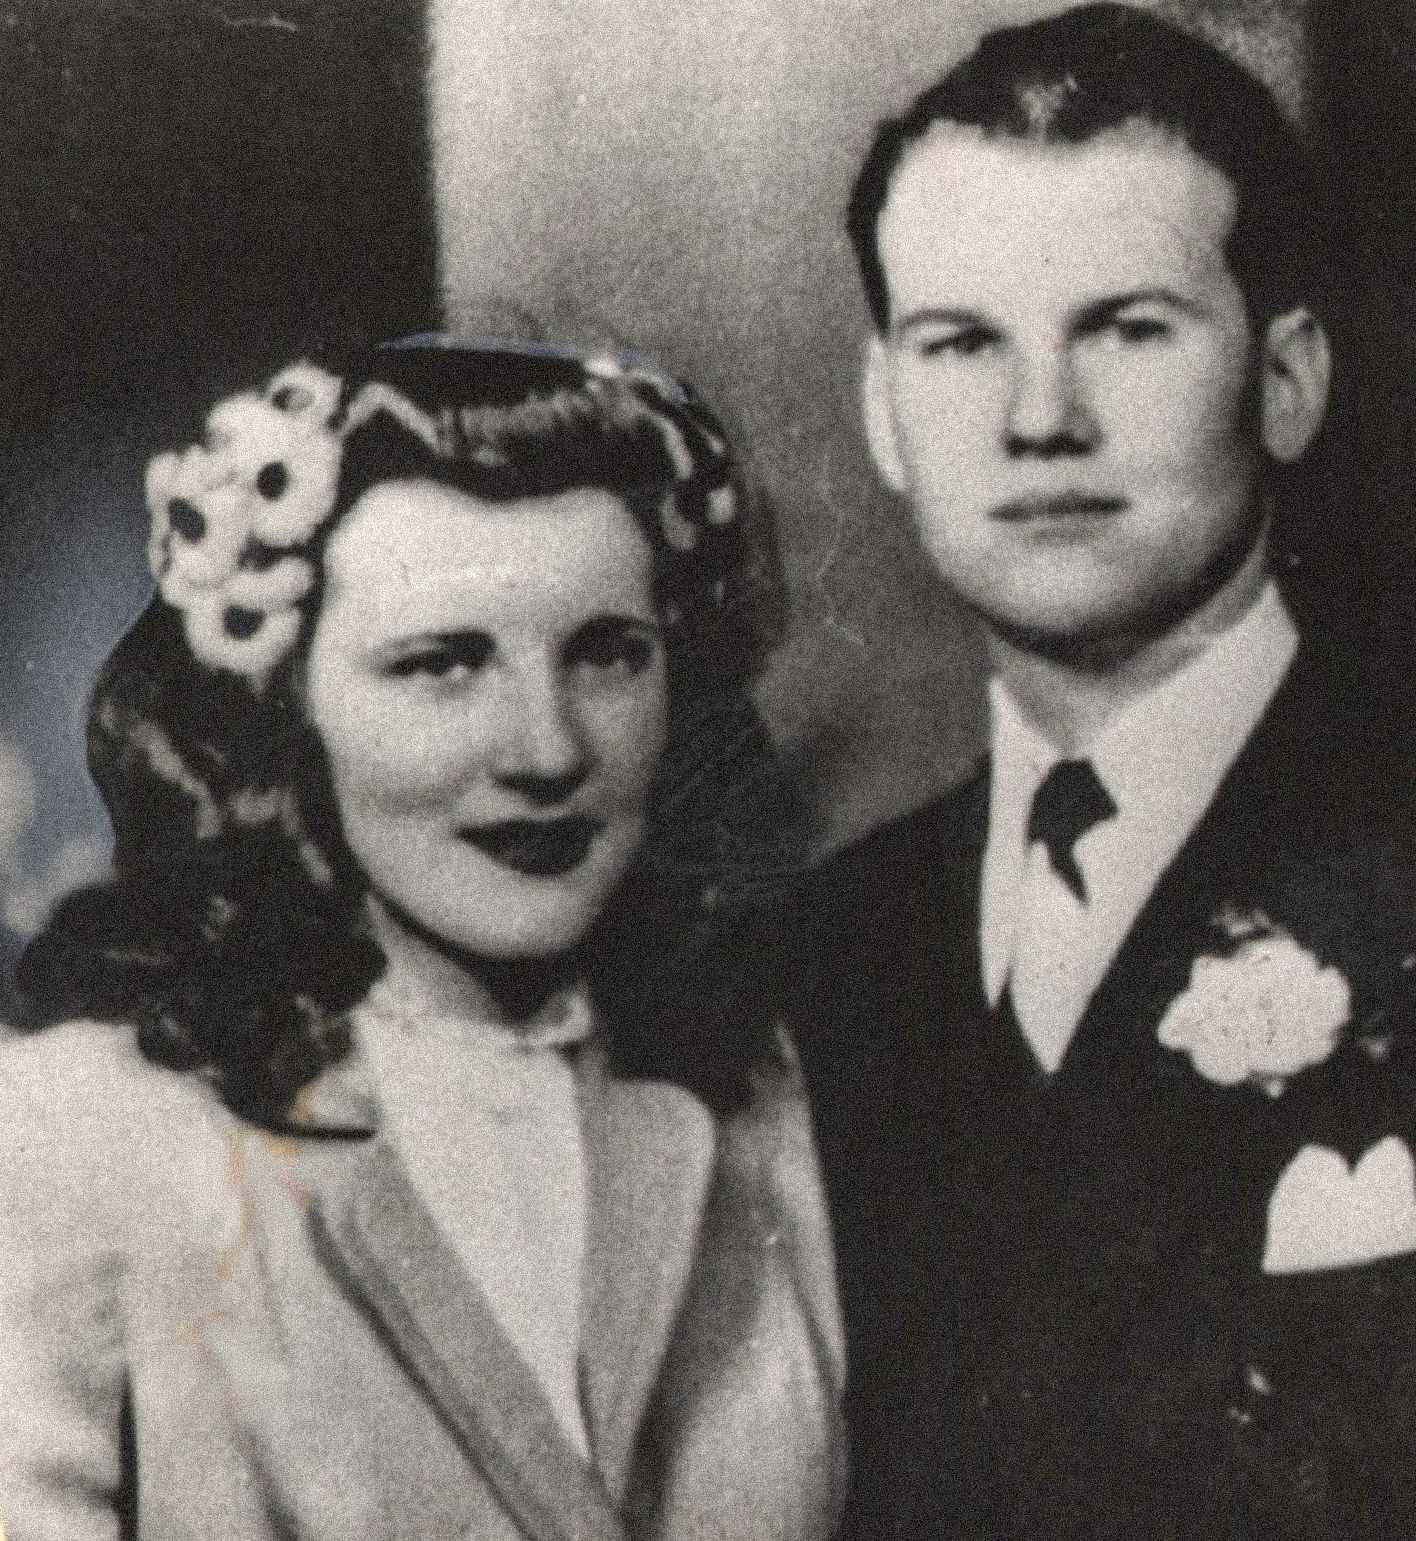 ในภาพคือแซมและมาริลีน เชปพาร์ด คู่รักหนุ่มสาวที่ดูมีความสุข ทั้งสองแต่งงานกันเมื่อวันที่ 21 กุมภาพันธ์ พ.ศ. 1945 และมีลูกด้วยกันหนึ่งคน แซม รีส เชพเพิร์ด มาริลีนกำลังตั้งท้องลูกคนที่สองของเธอในขณะที่เธอถูกฆาตกรรม